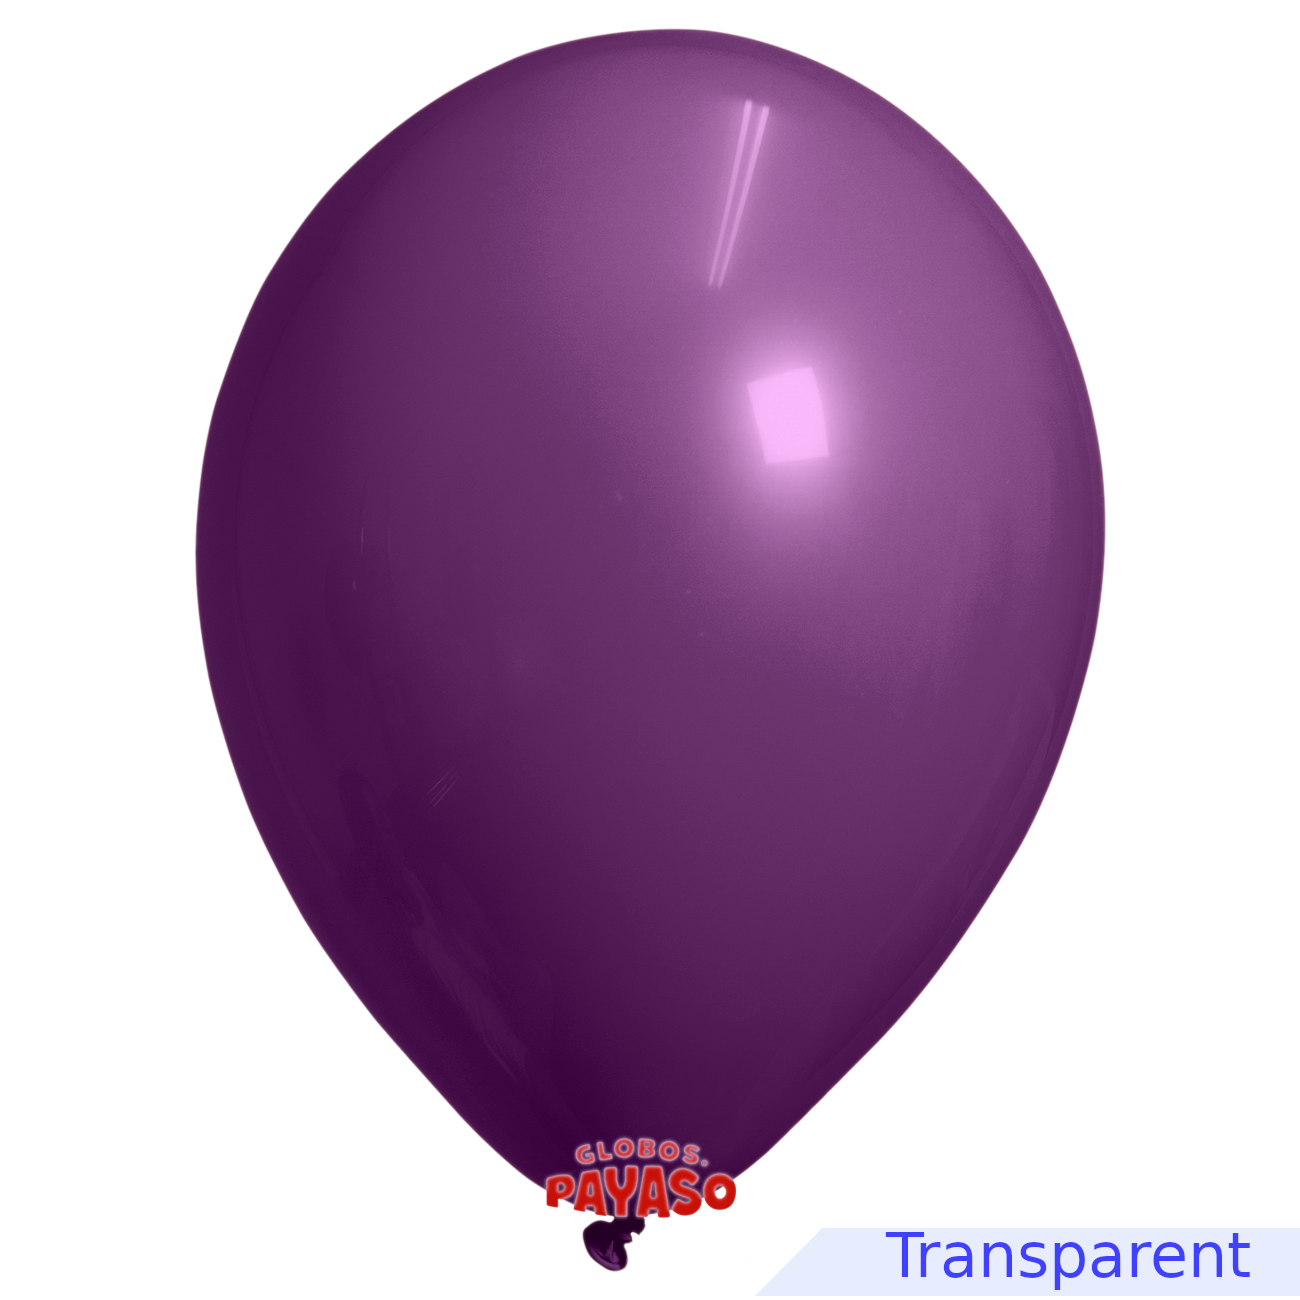 Globos Payaso / Unique 5" Violet Foncé Translucide Décorateur Ballon